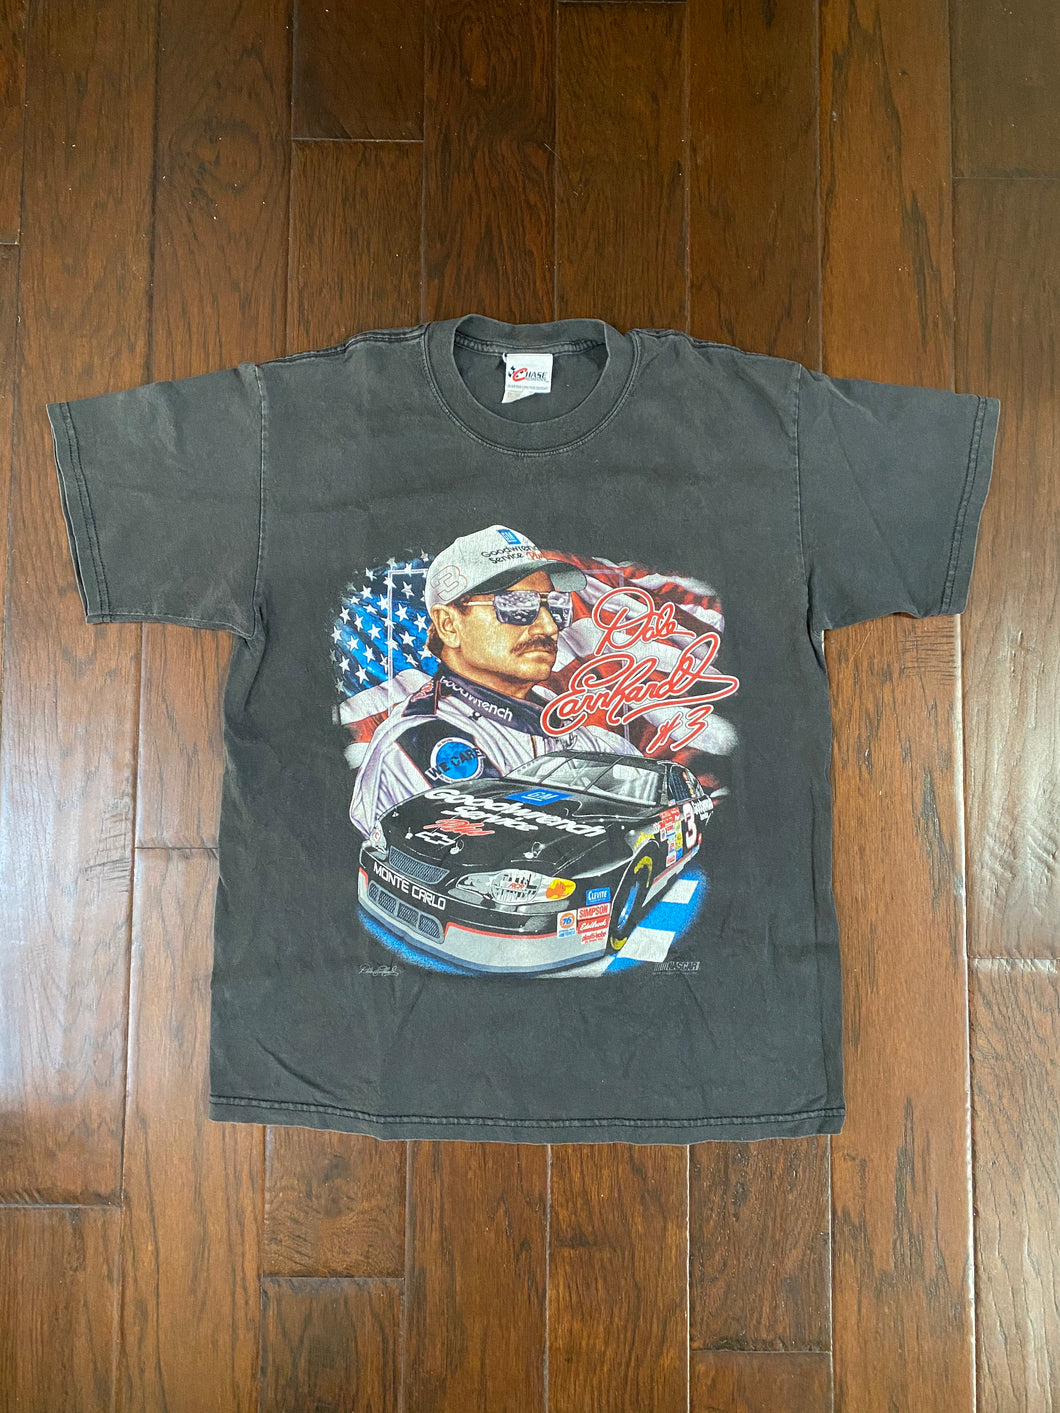 Dale Earnhardt #3 NASCAR 1990’s Vintage Distressed T-shirt